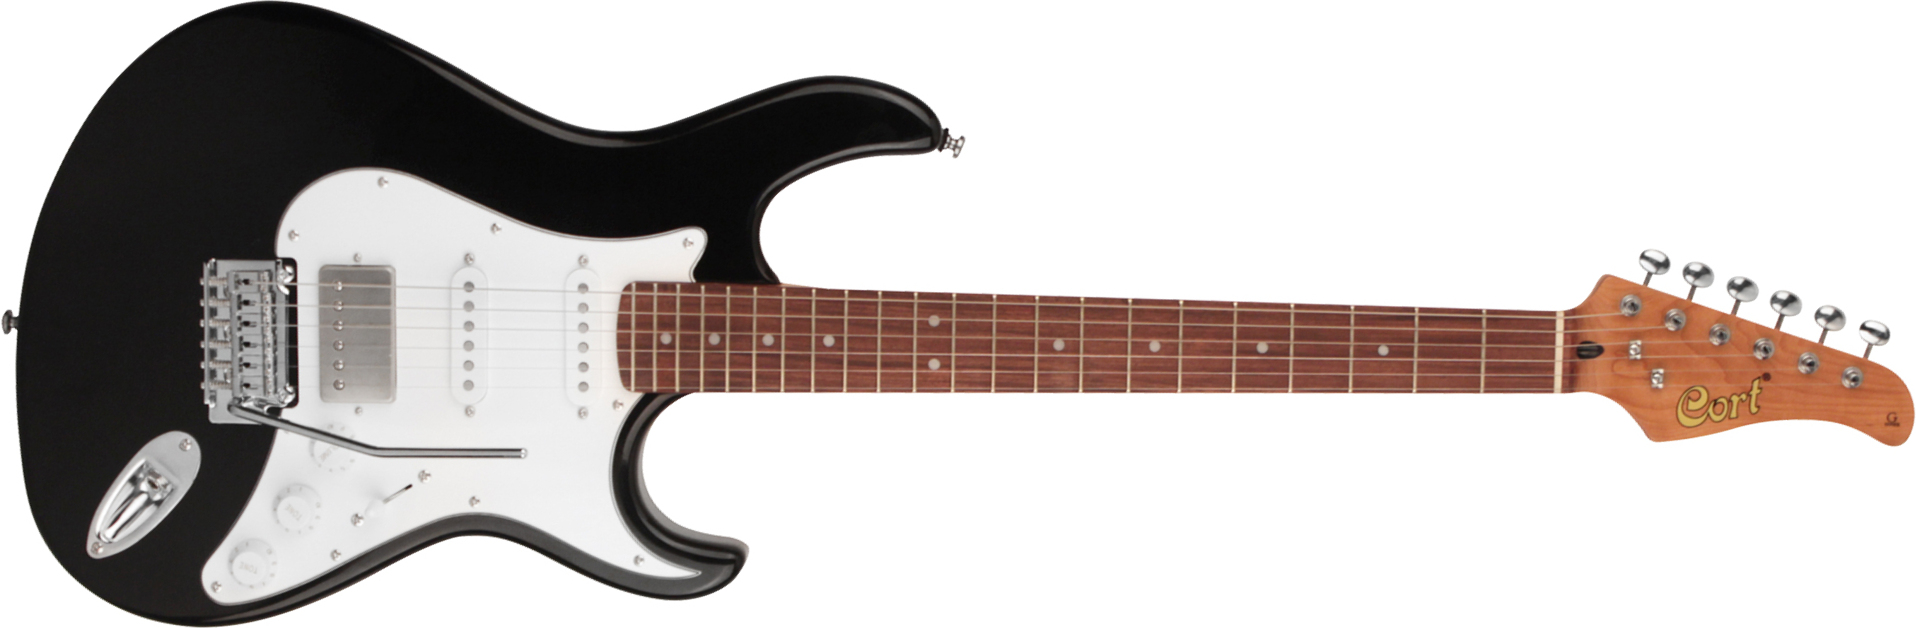 Cort G260cs Hss Trem Pau - Black - Str shape electric guitar - Main picture